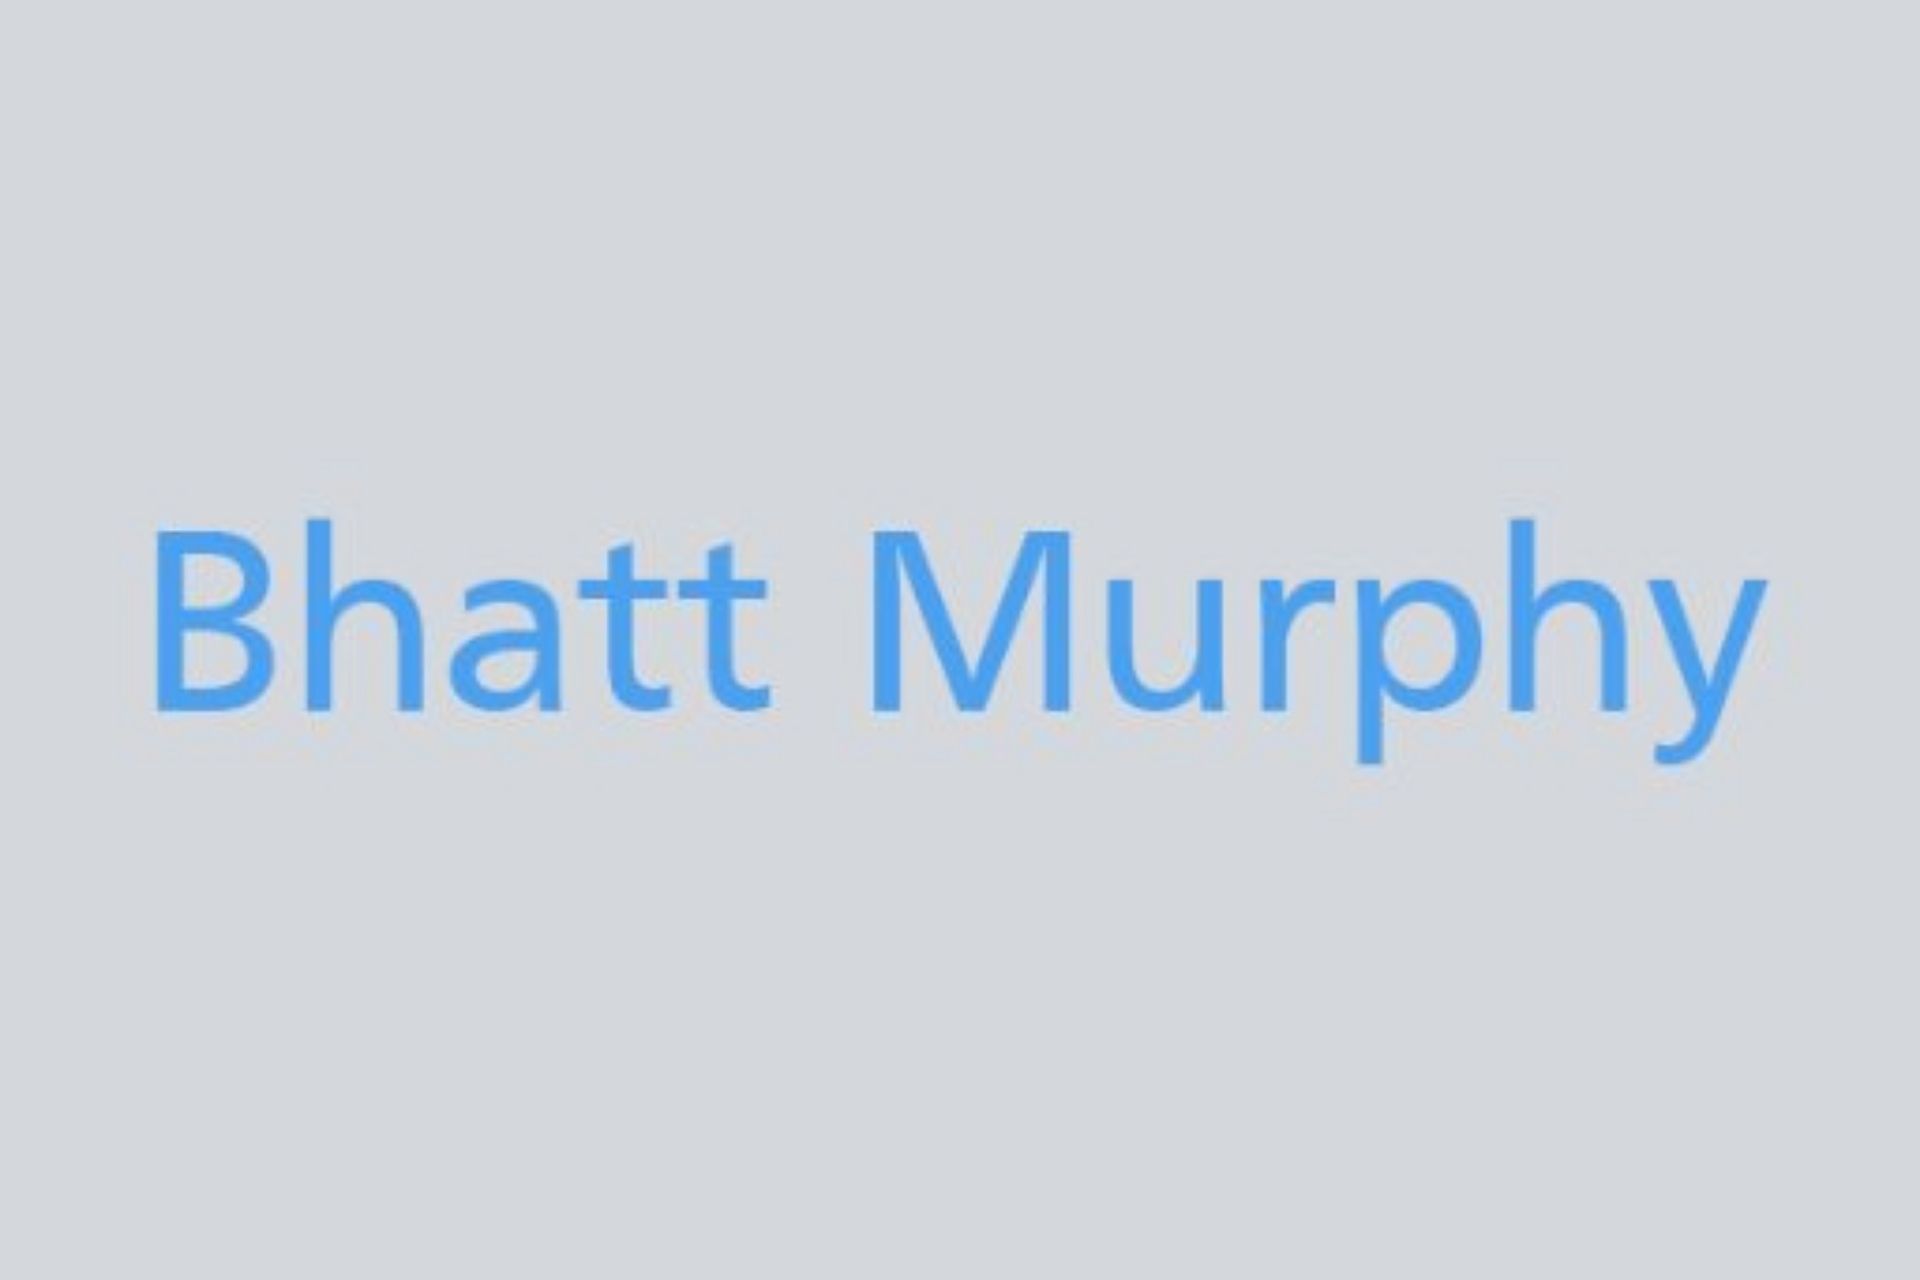 Murphy logo